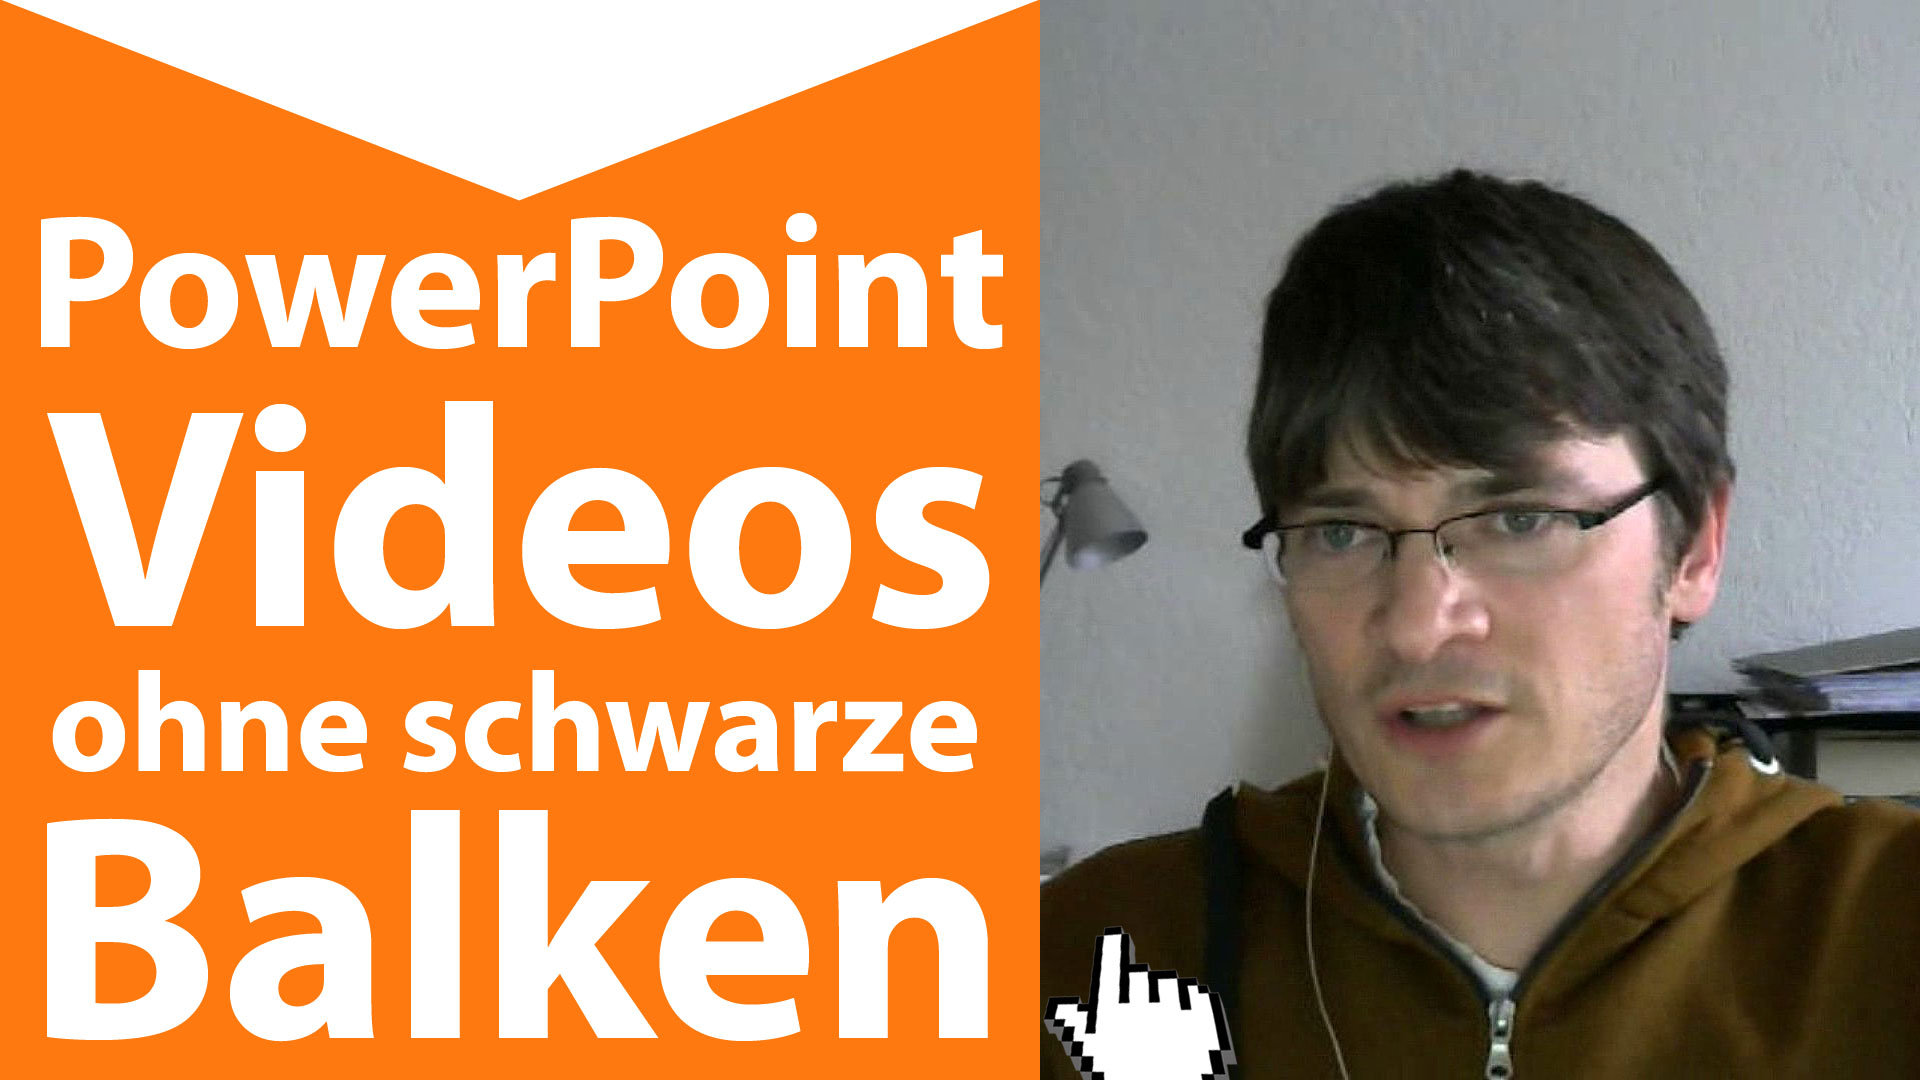 Powerpoint 16 9 – Powerpoint Videos im 16:9 Format ohne schwarze Balken